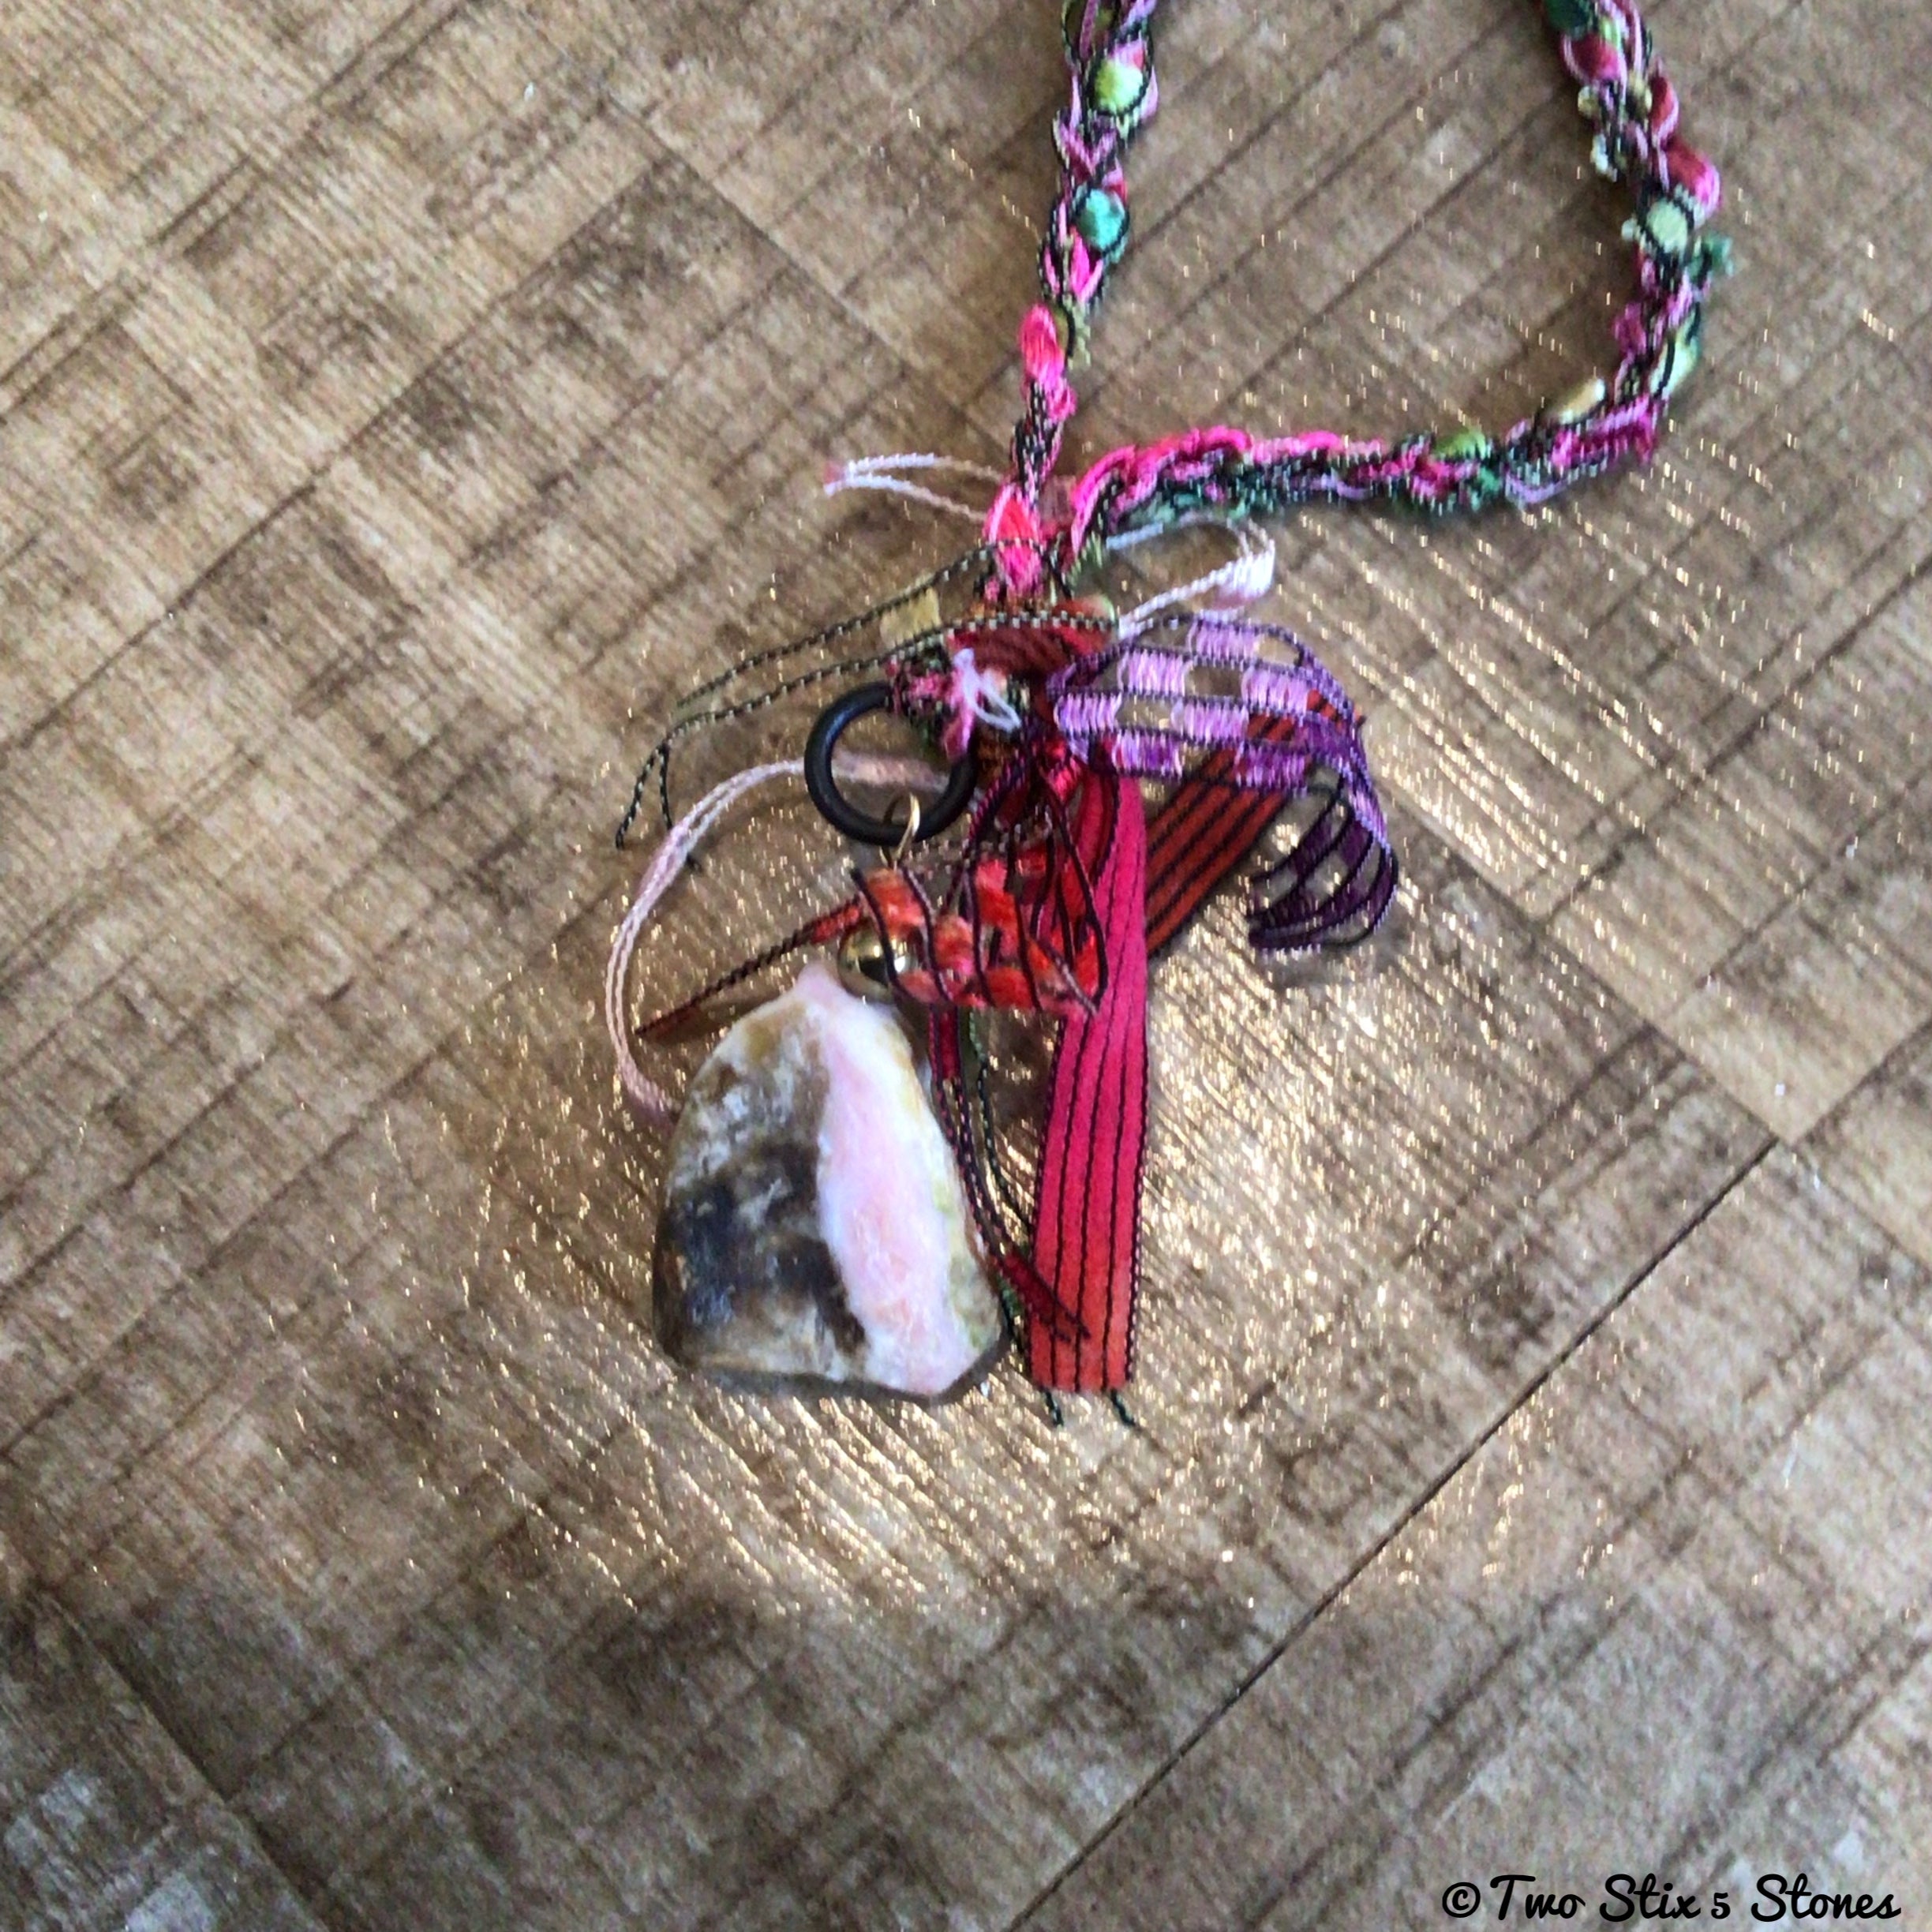 Fiber Necklace w/Semi-Precious Stones